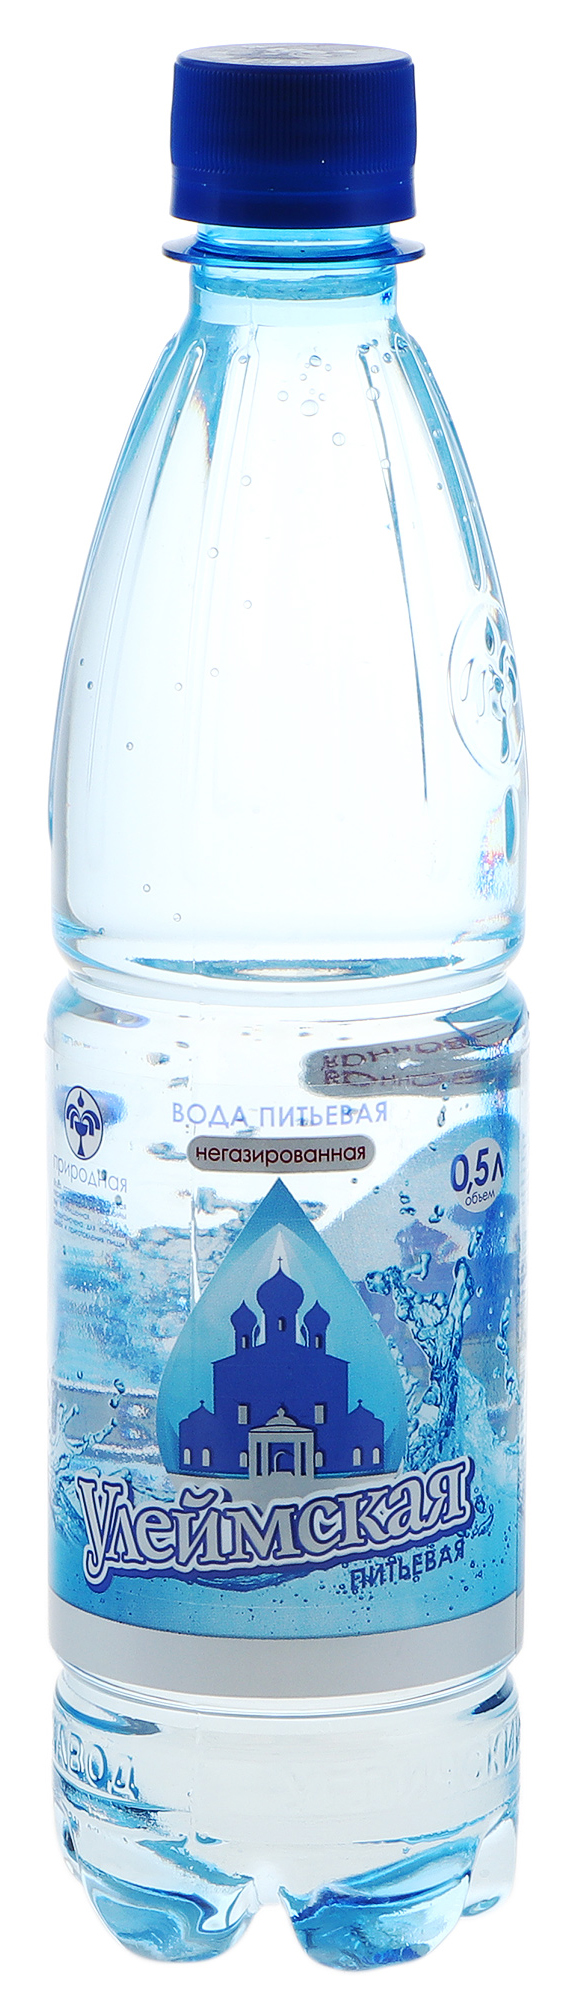 Вода питьевая Улеймская негазированная 0,5 л